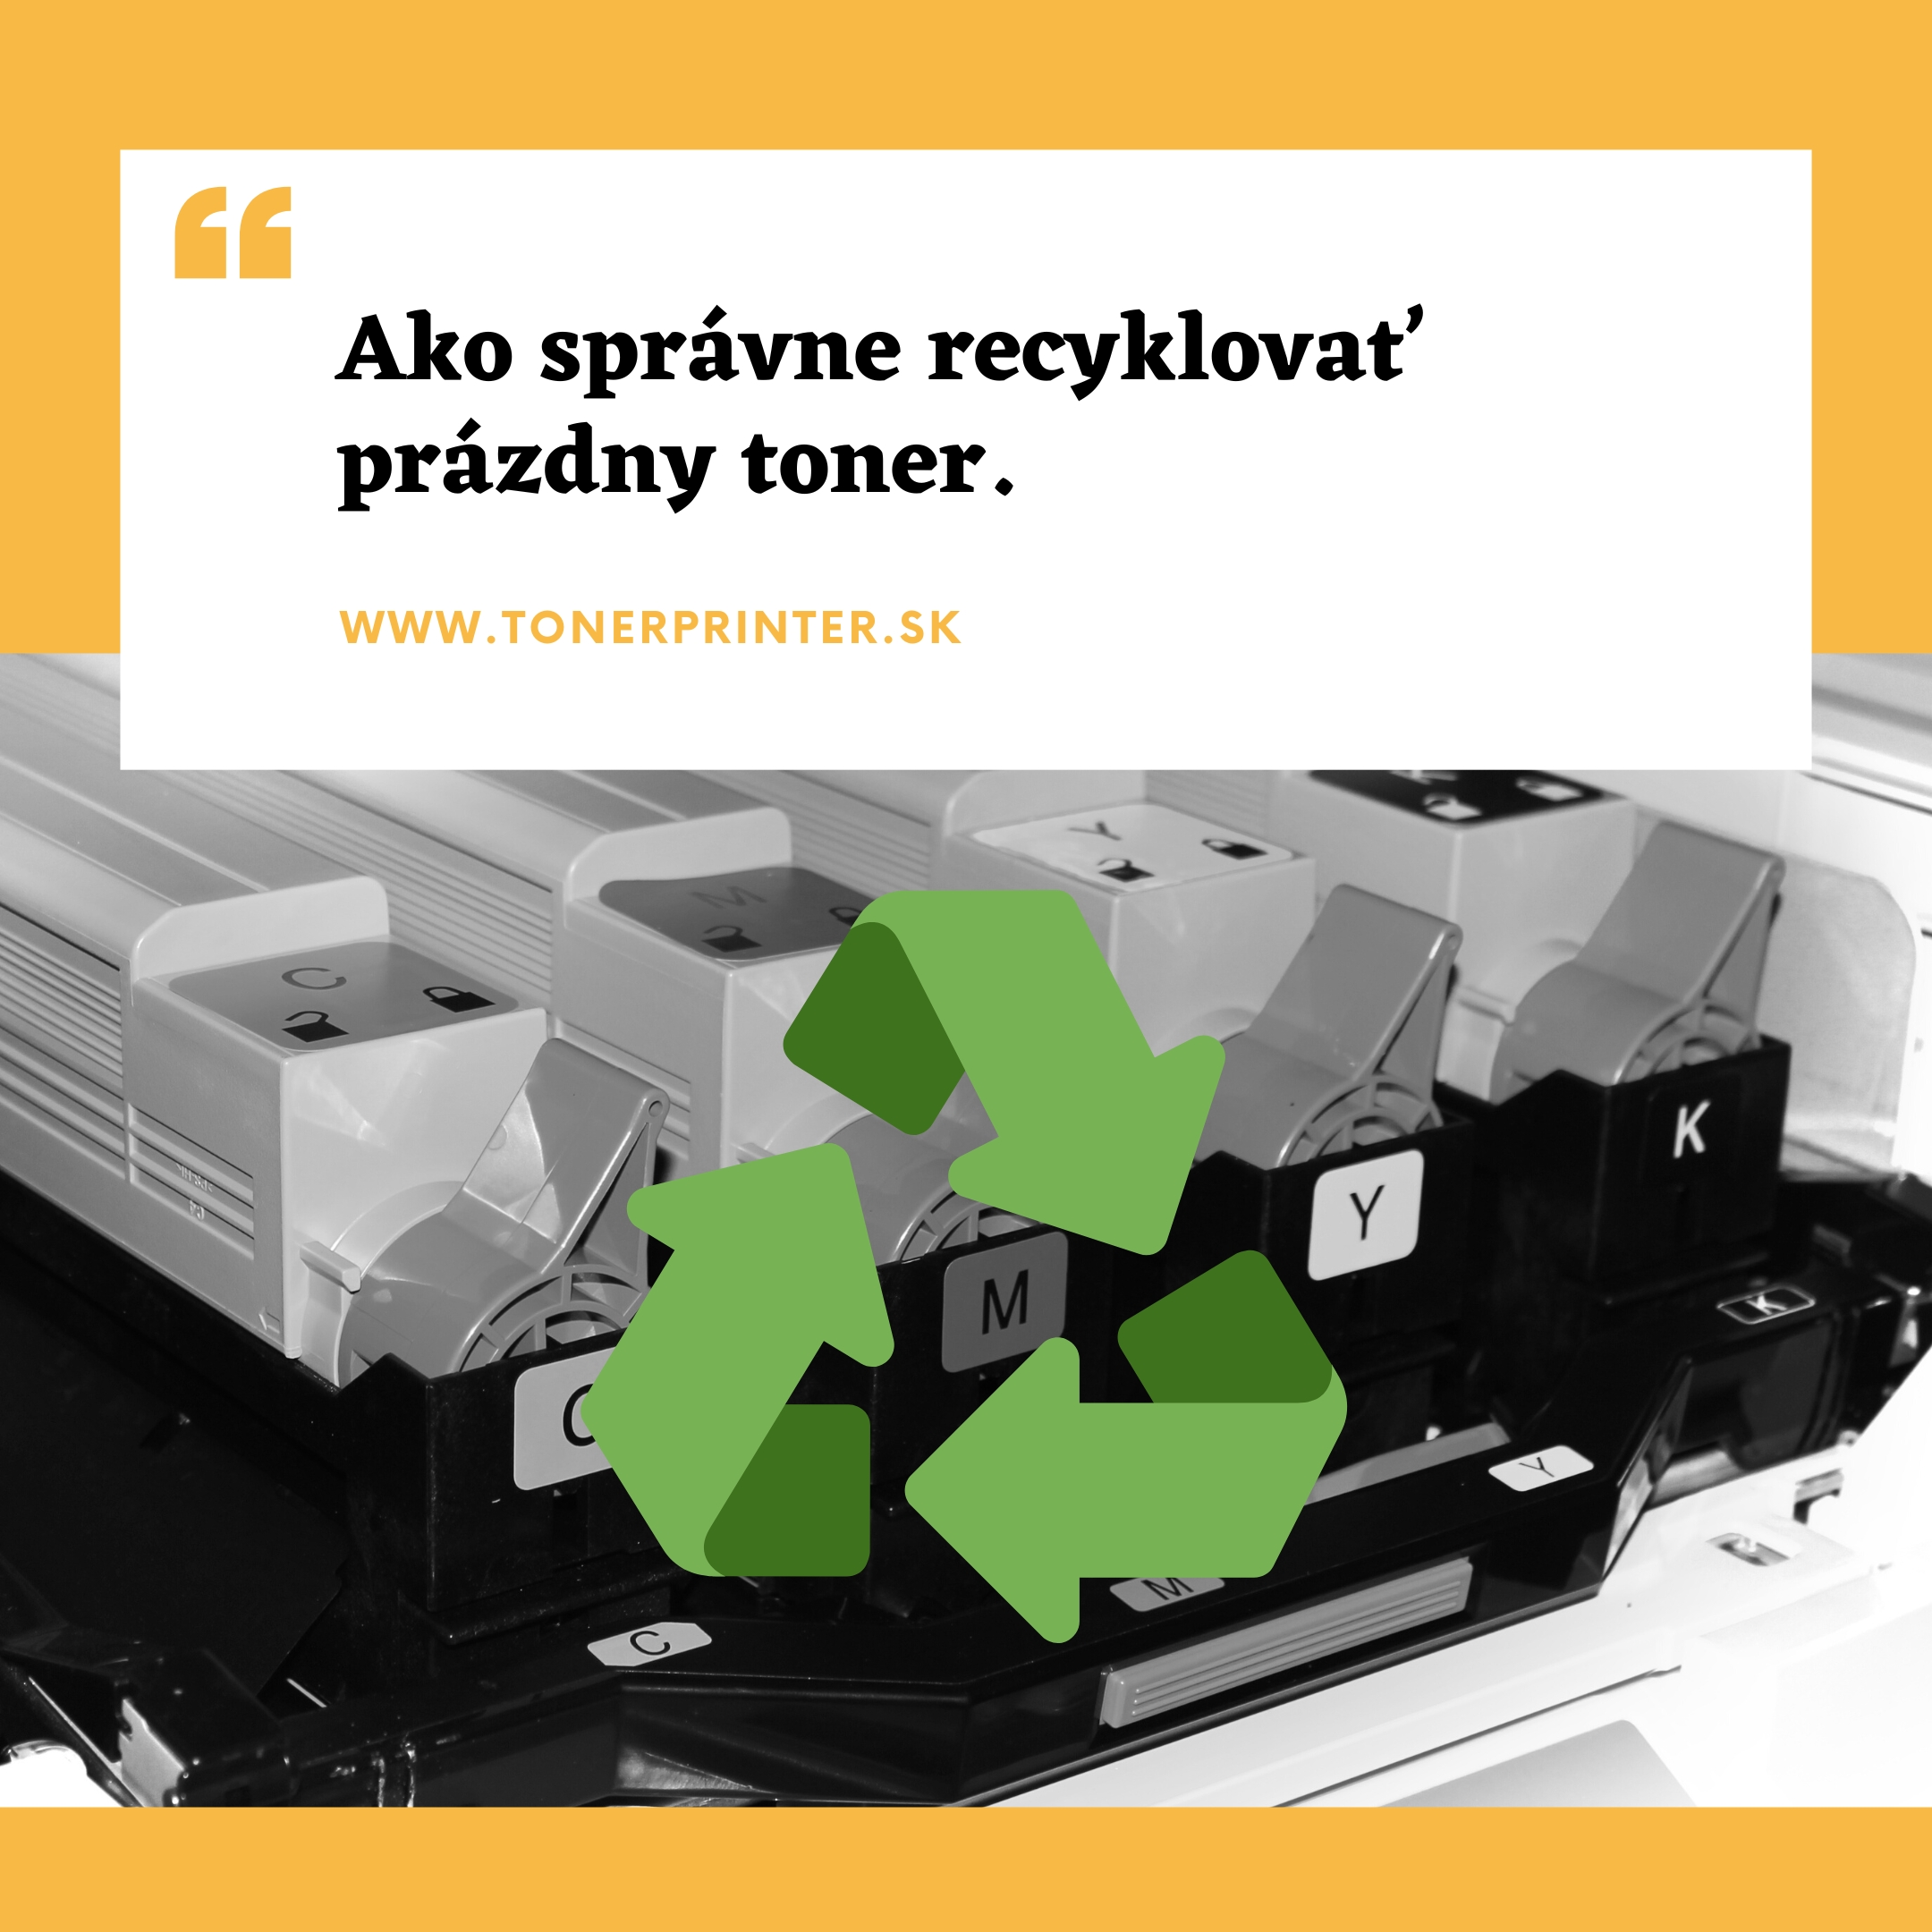 Ako správne recyklovať prázdny toner?